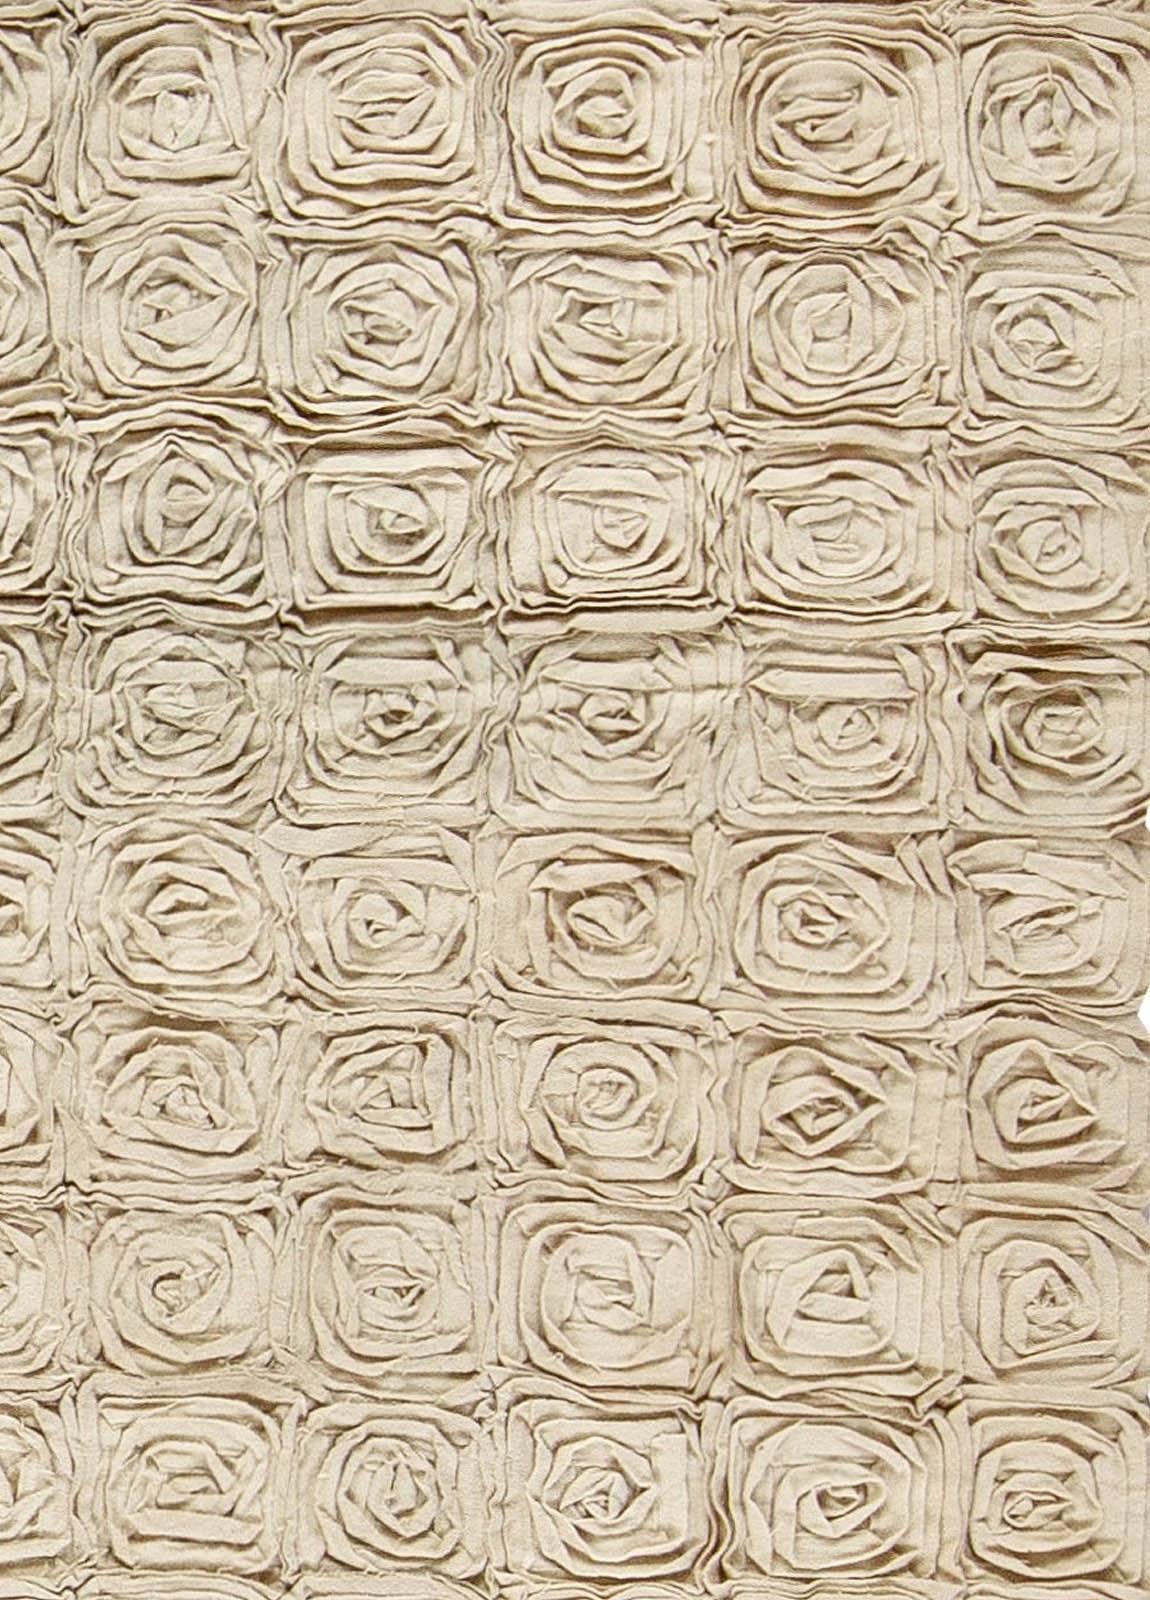 Modern floral handcrafted carpet by Doris Leslie Blau.
Size: 9'4